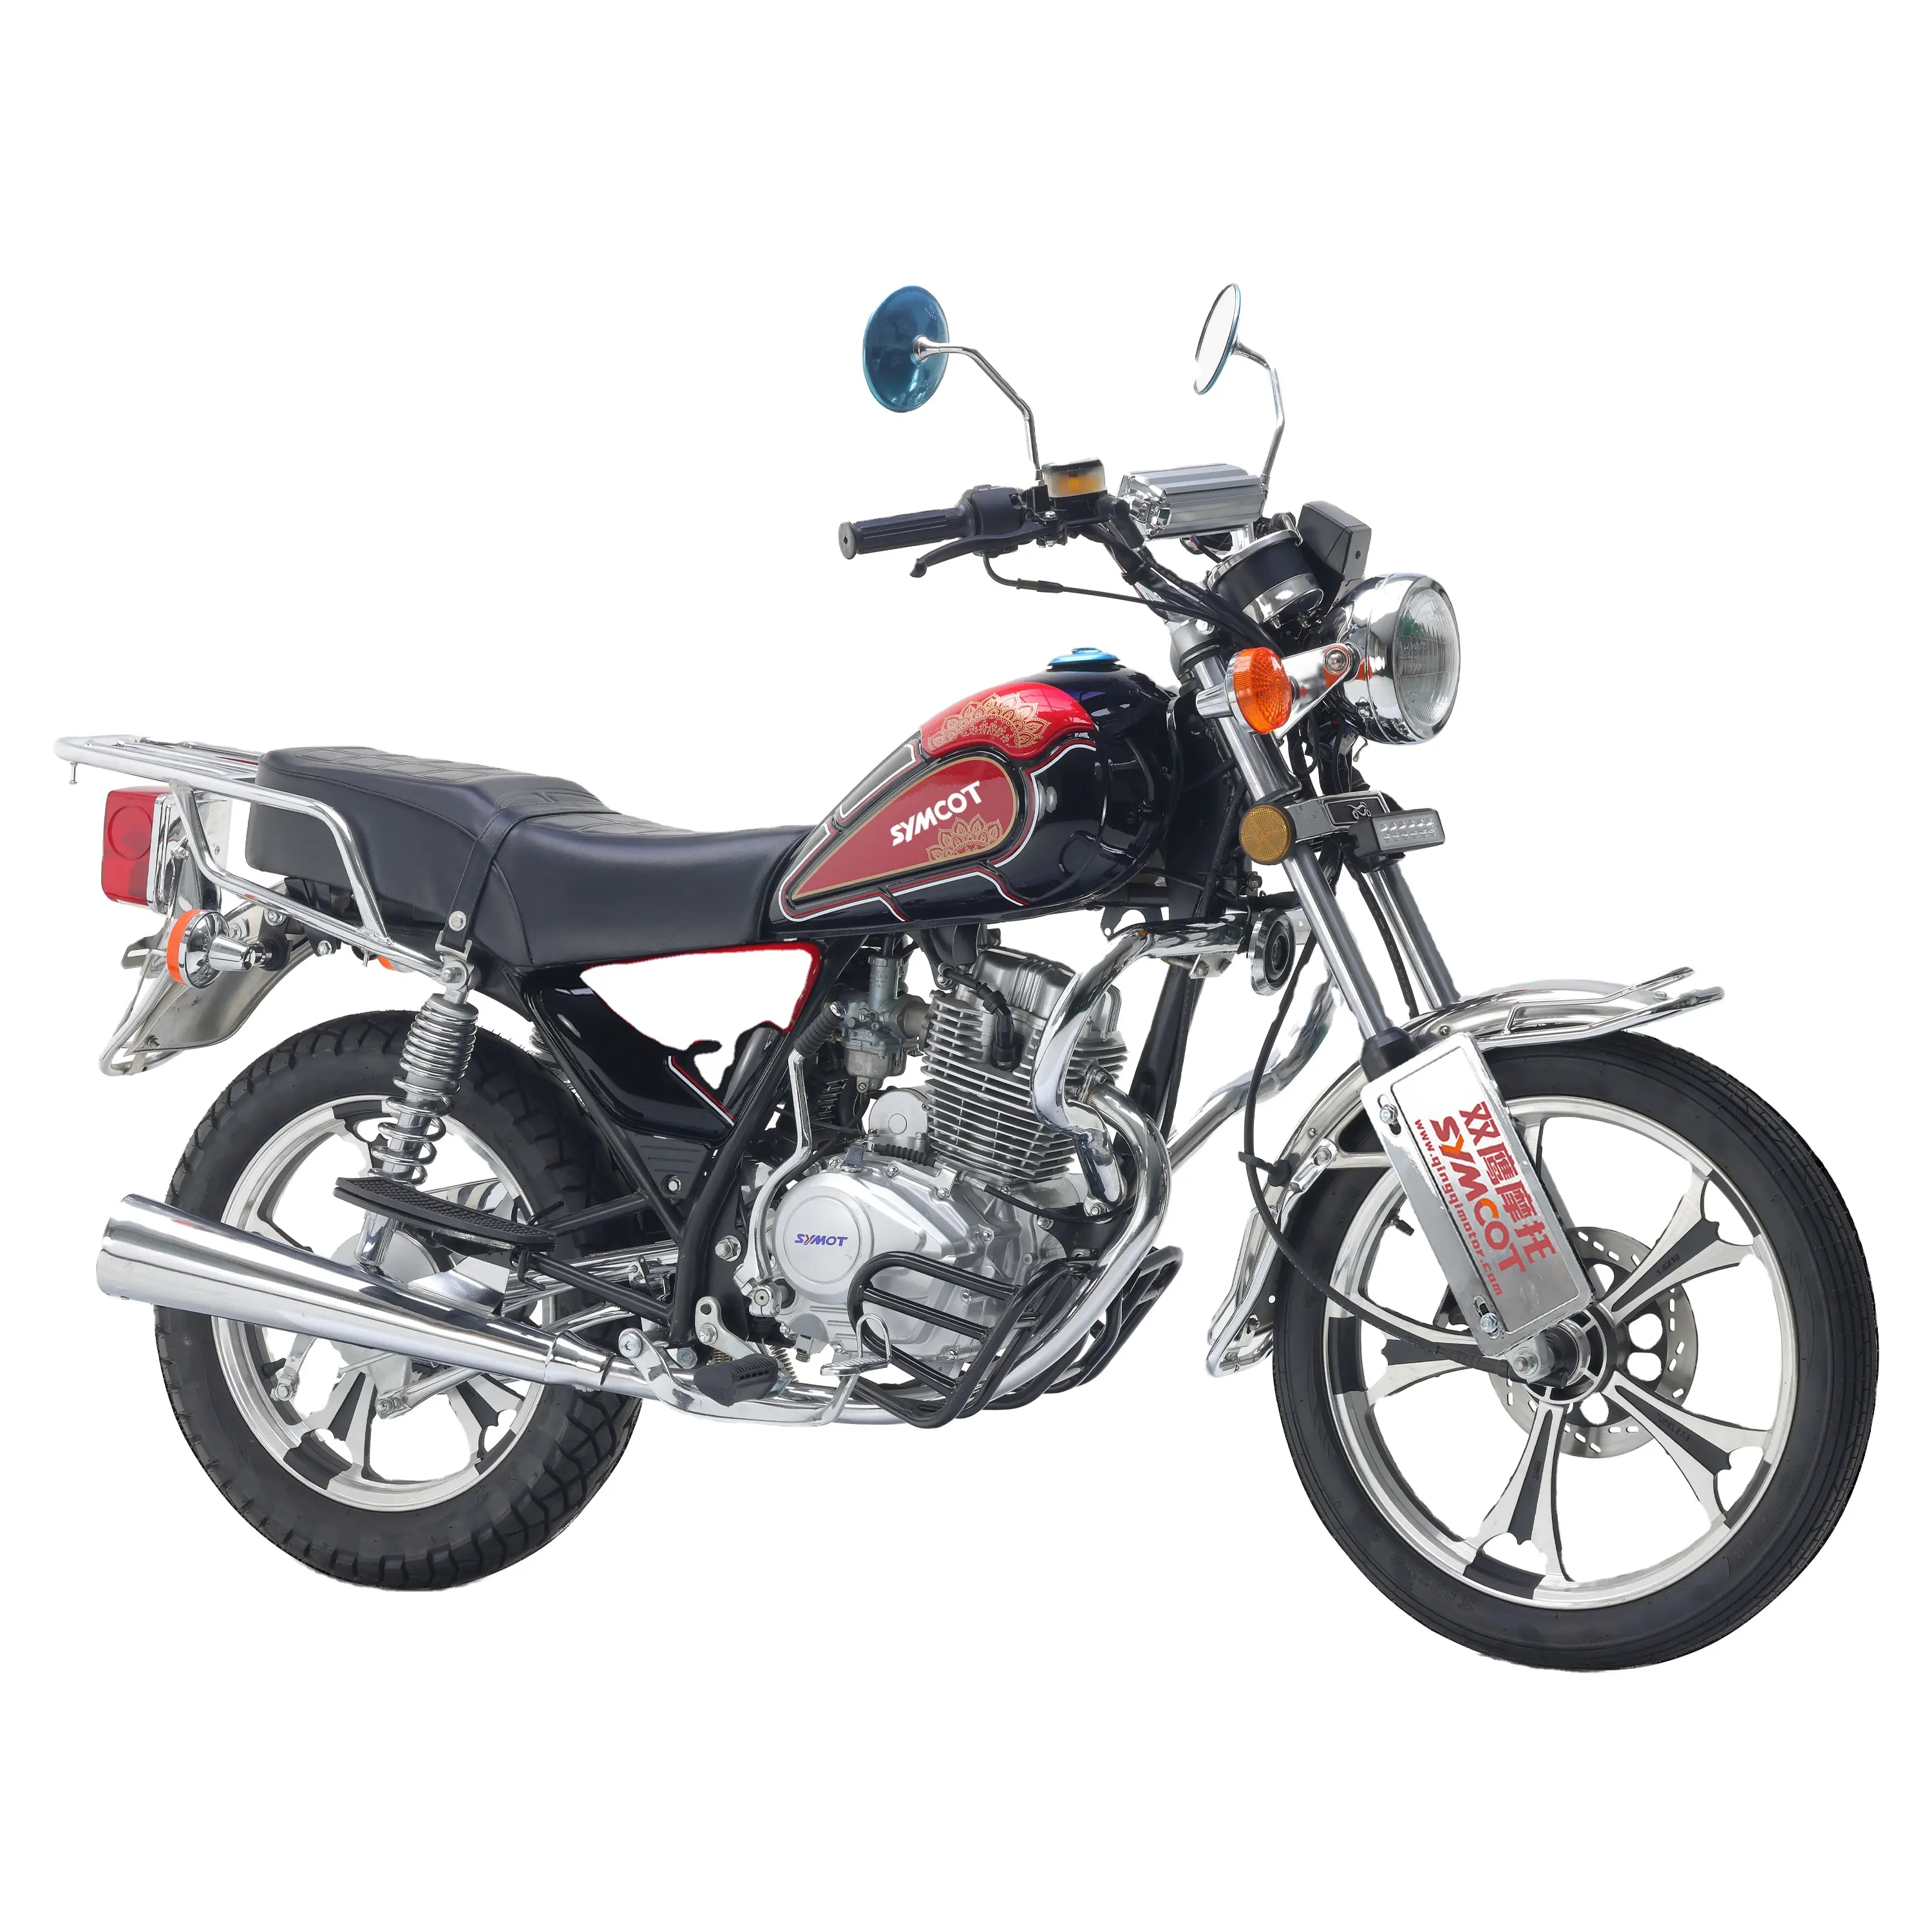 Cruiser Motorrad billig Stomp Motorräder 150cc 125cc 110 ccm 50ccm klassisches Motorrad zu verkaufen